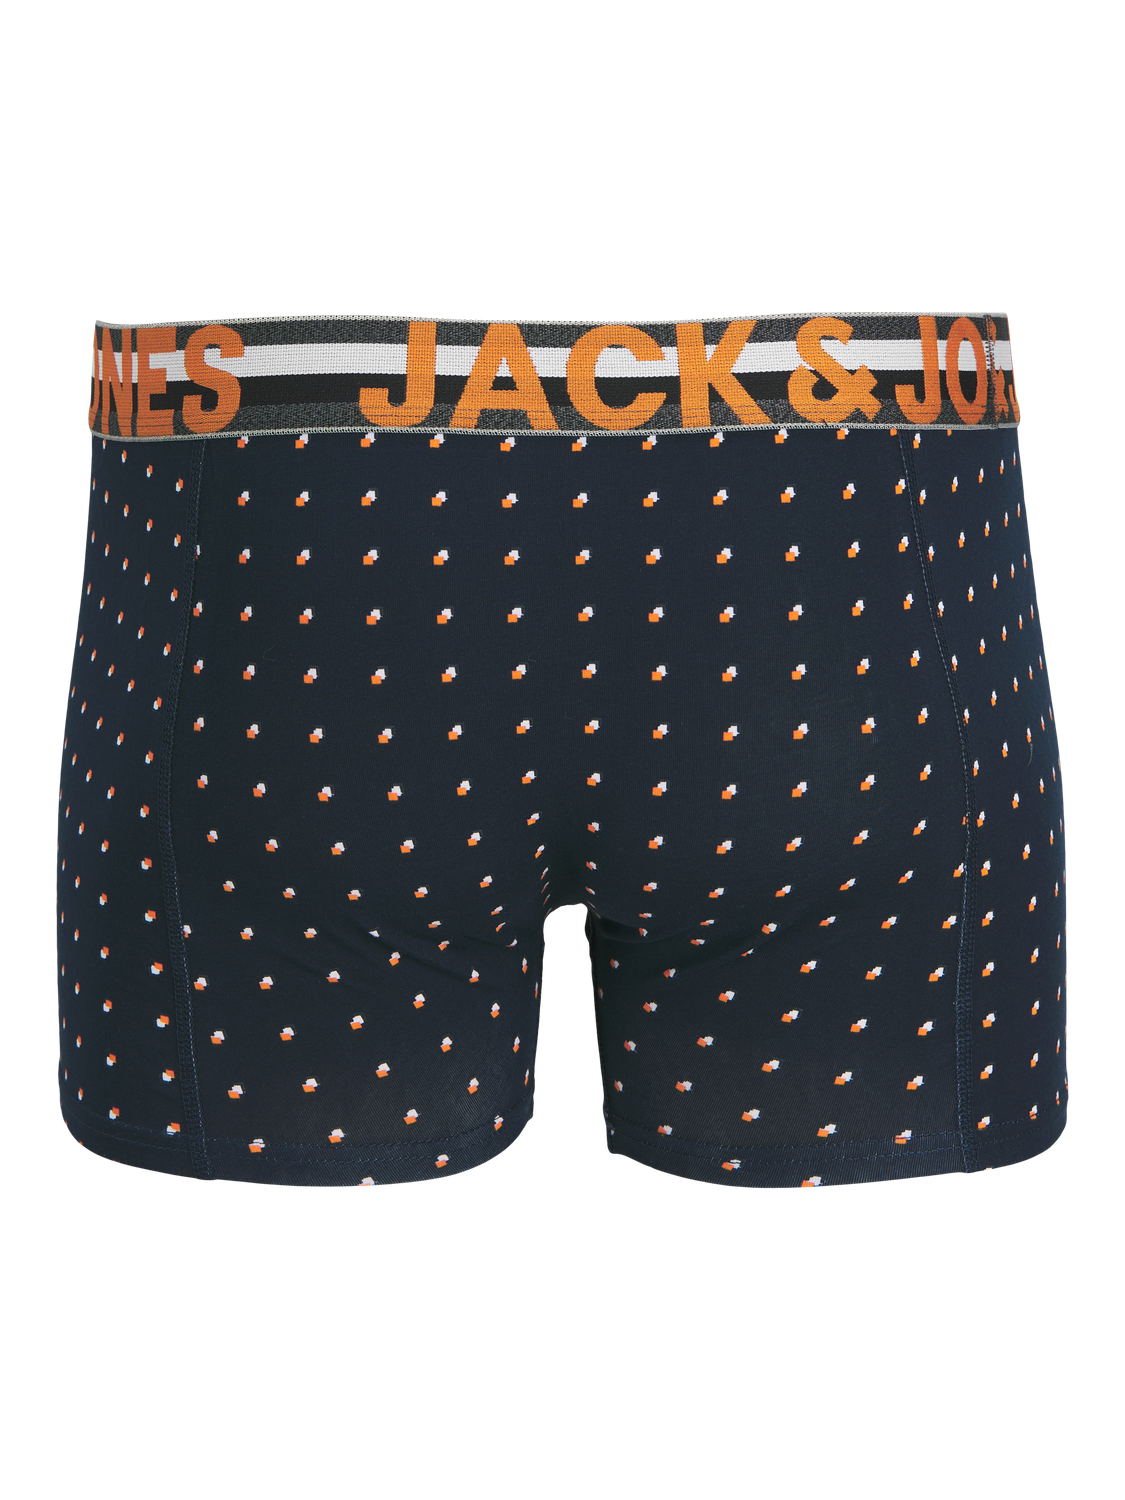 Jack & Jones Mens New 3 Pack Trunks Boxer Shorts Underwear Black Navy ...